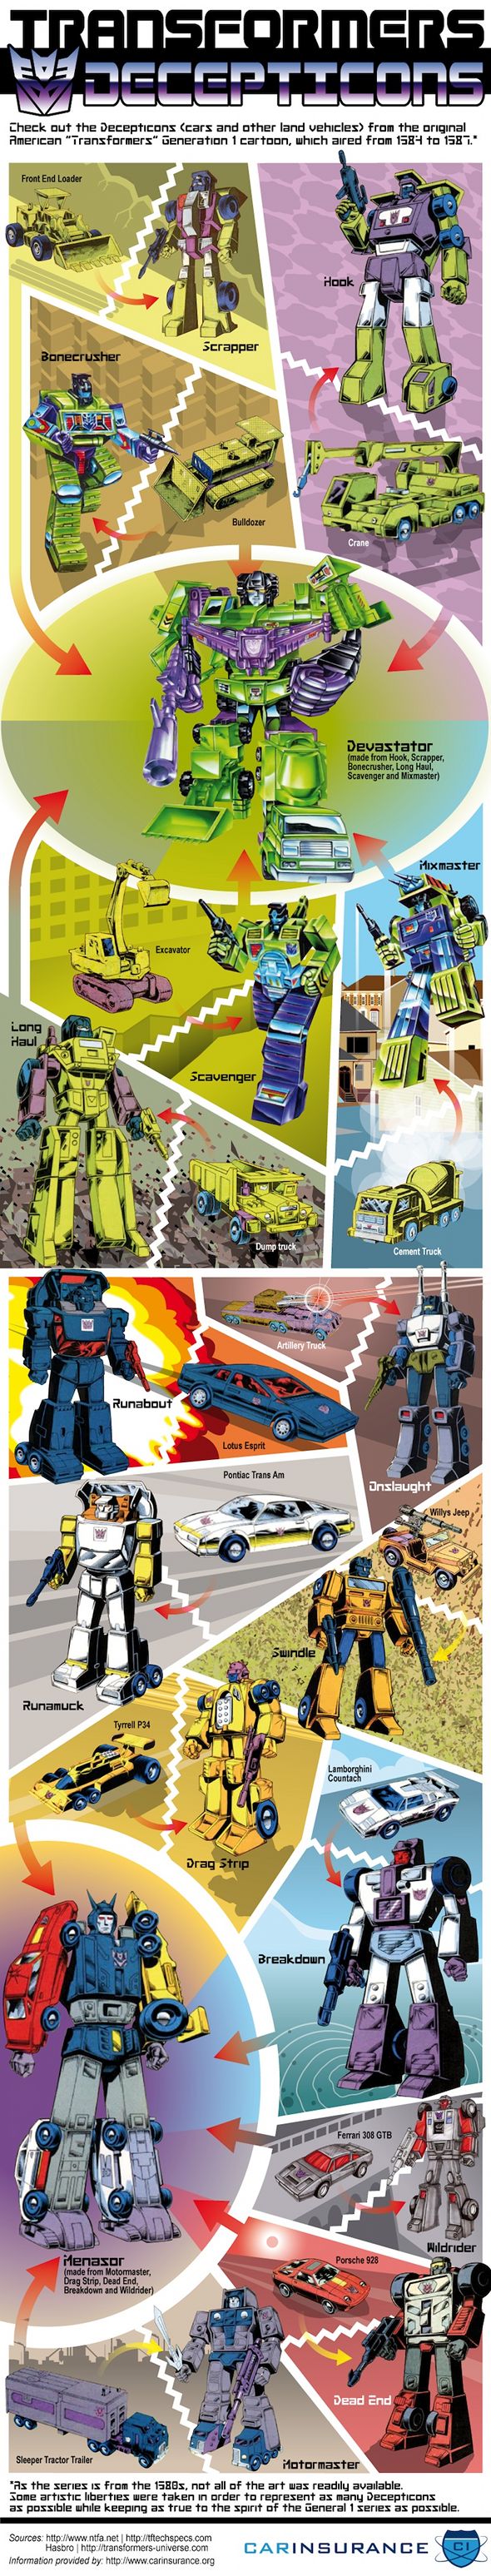 Transformers Decepticons infographic - Les véhicules des Decepticons, la série originale!